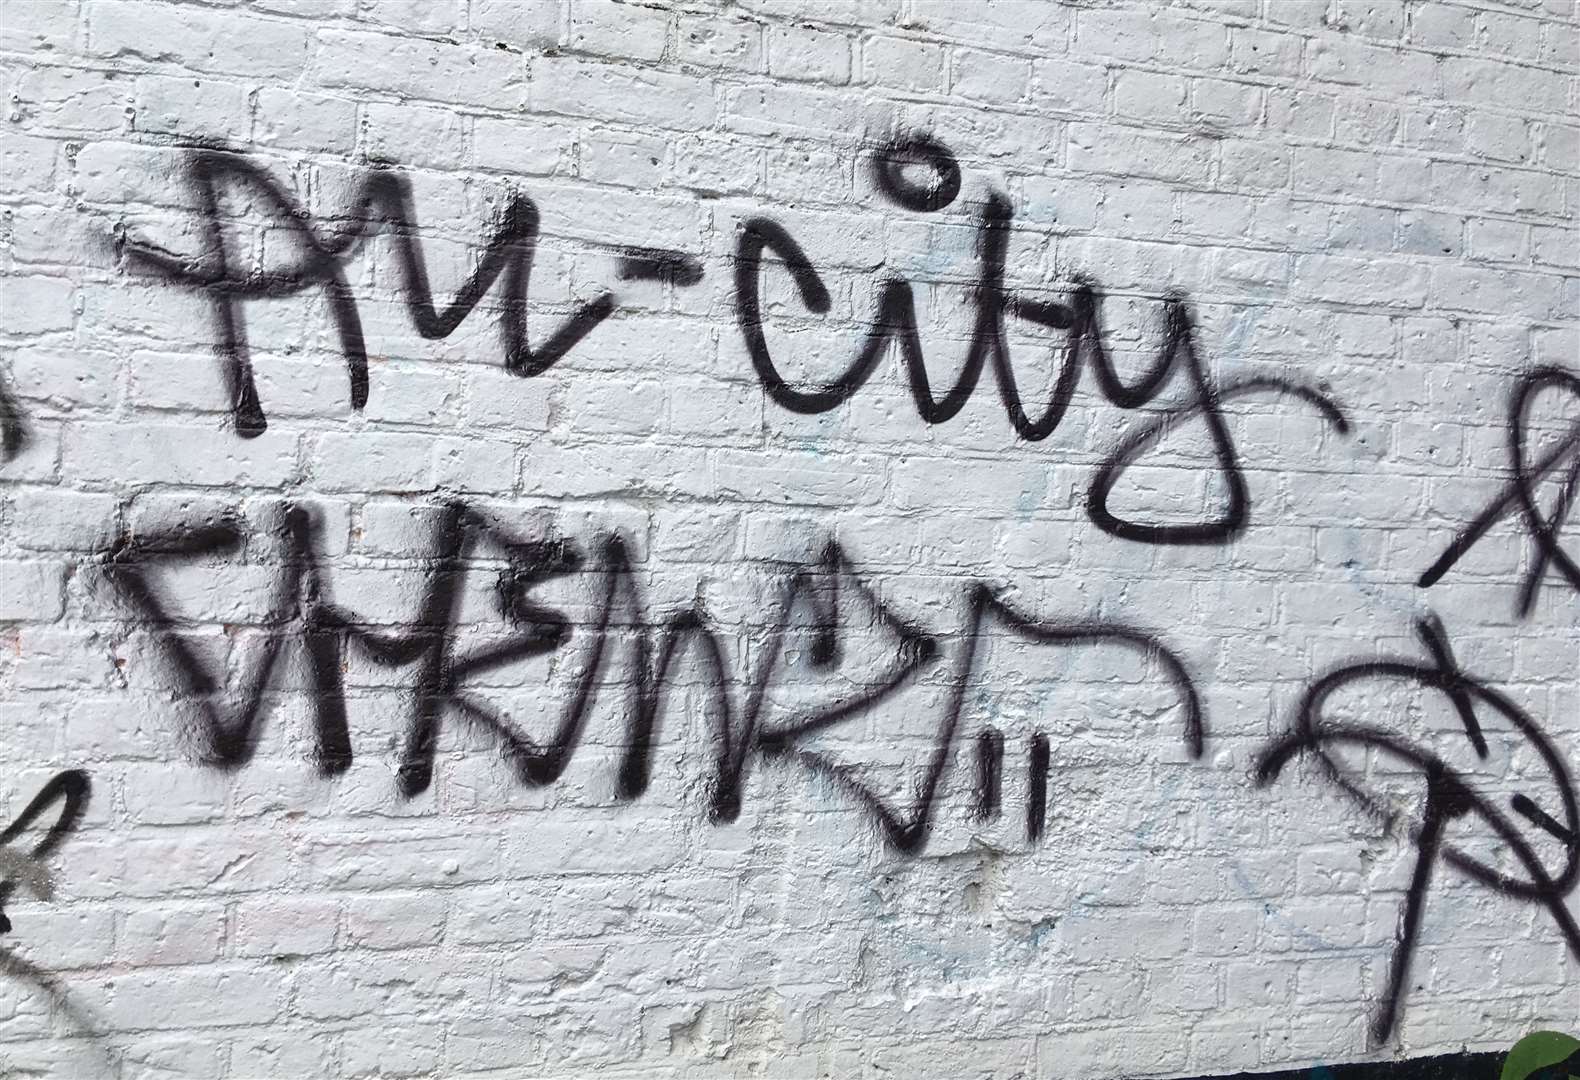 Graffiti in Maidstone town centre (12643719)